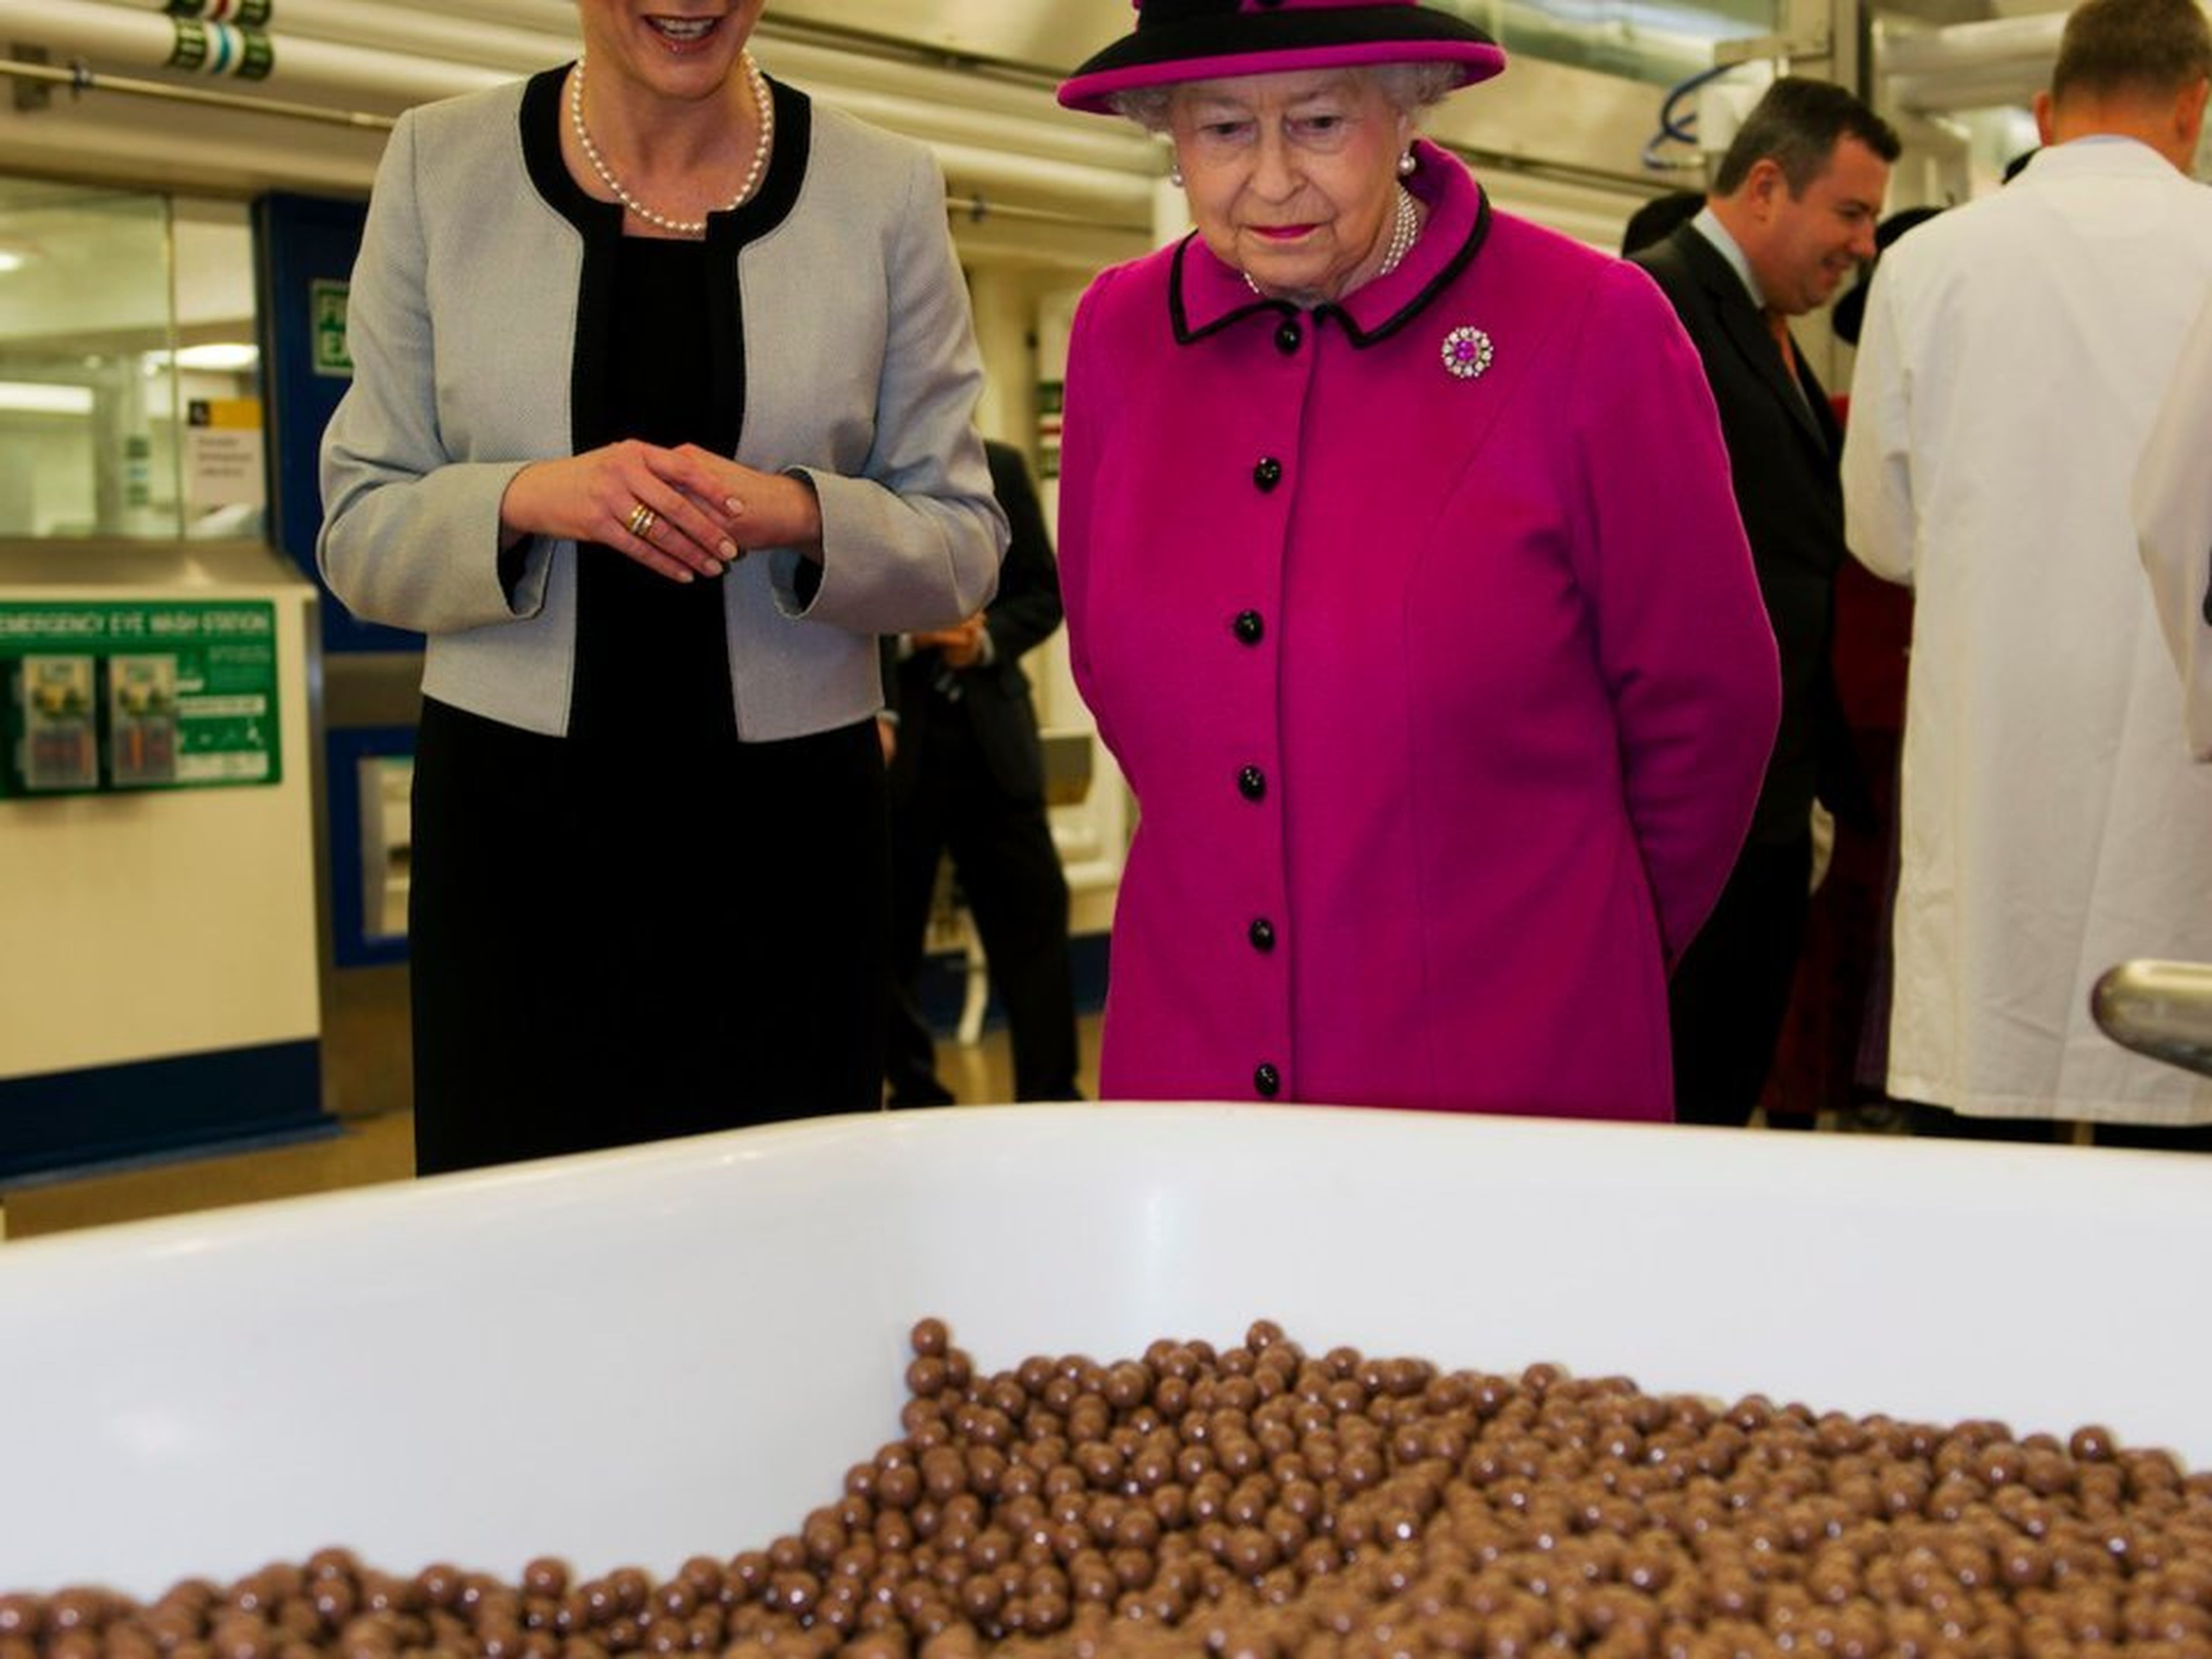 La Reina también adora el chocolate, ya sea una marca de lujo o de supermercado.